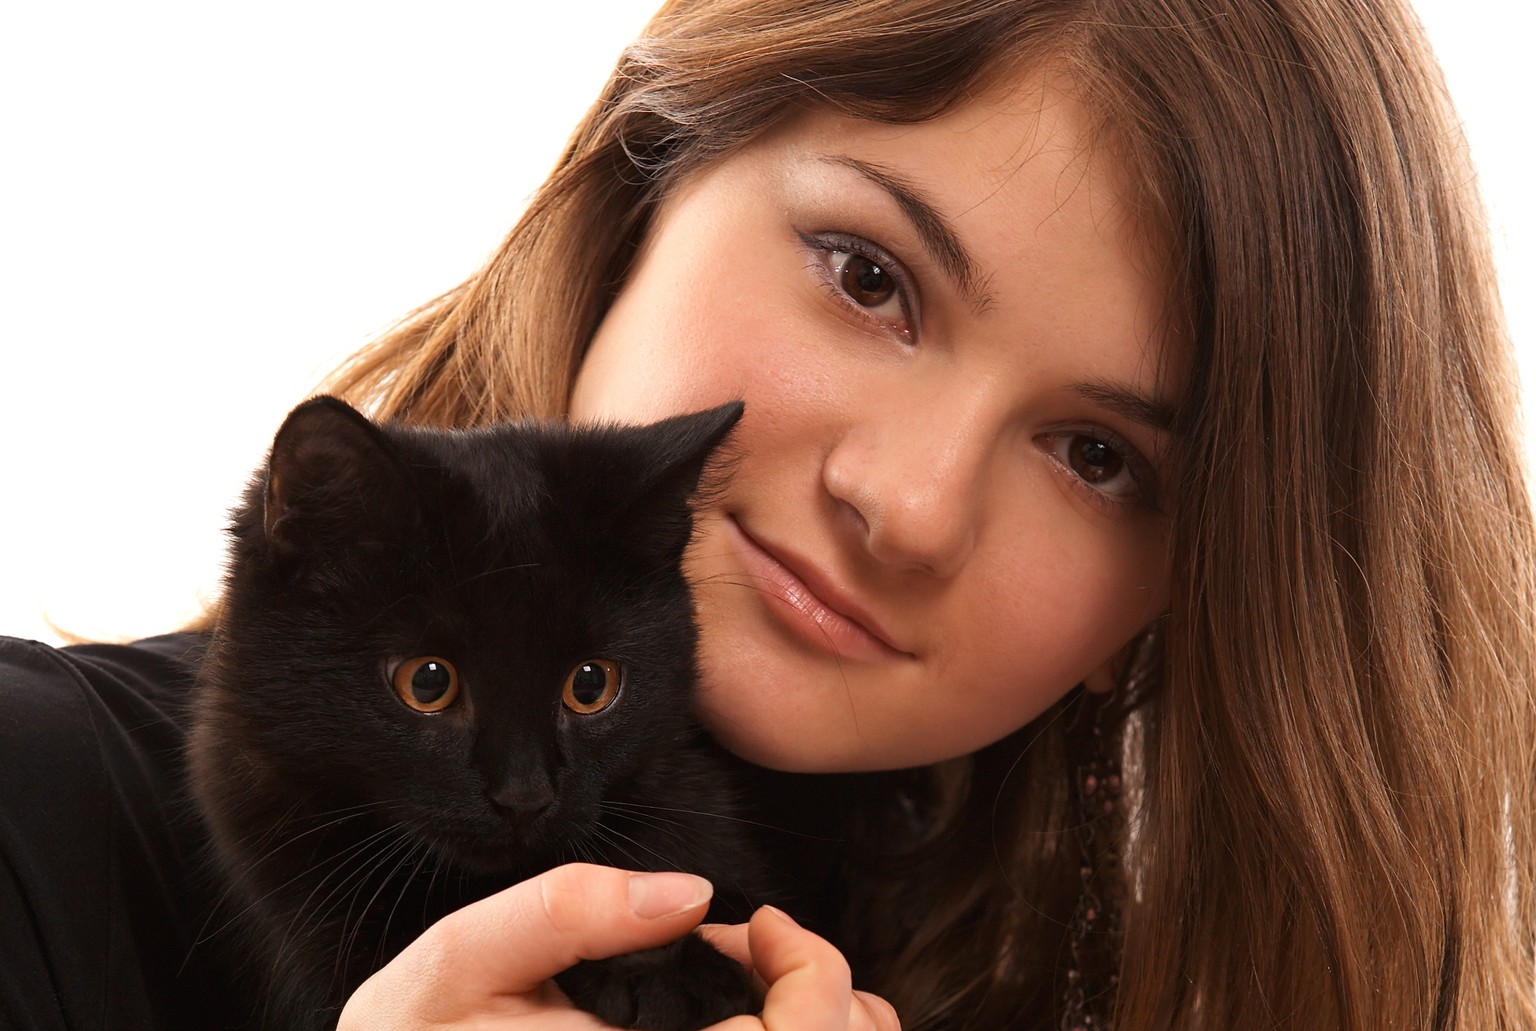 Oft nur ein schwarzer Fleck mit Augen: Schwarze Katzen sind schwierig zu fotografieren.